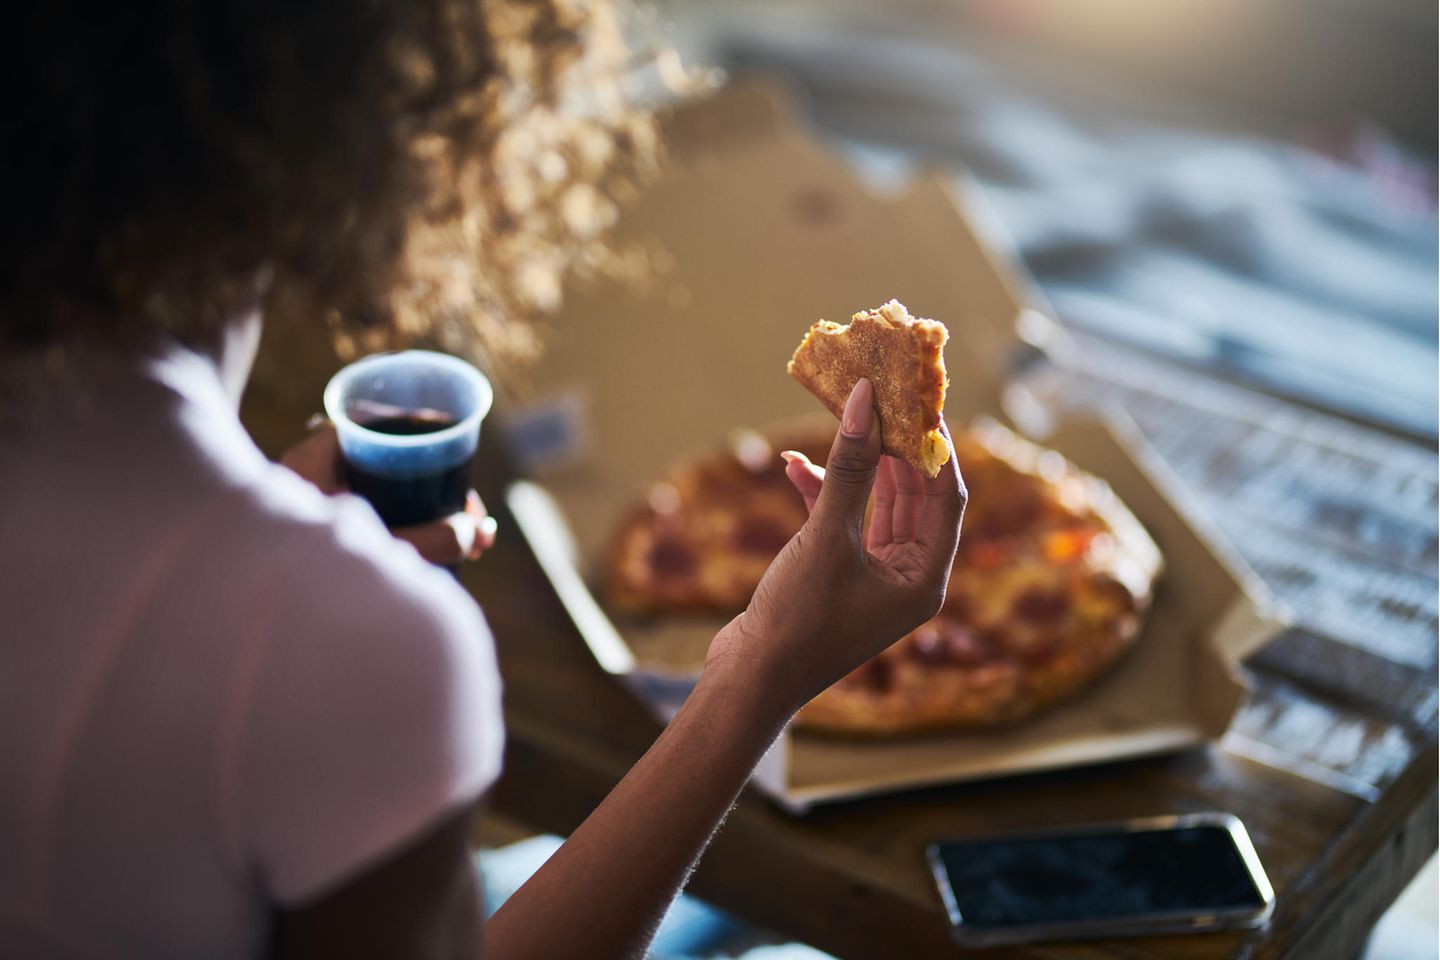 Wie Sie Ihre Pizza essen, verrät einiges über Ihre Persönlichkeit: Frau isst Pizza und trinkt Cola.